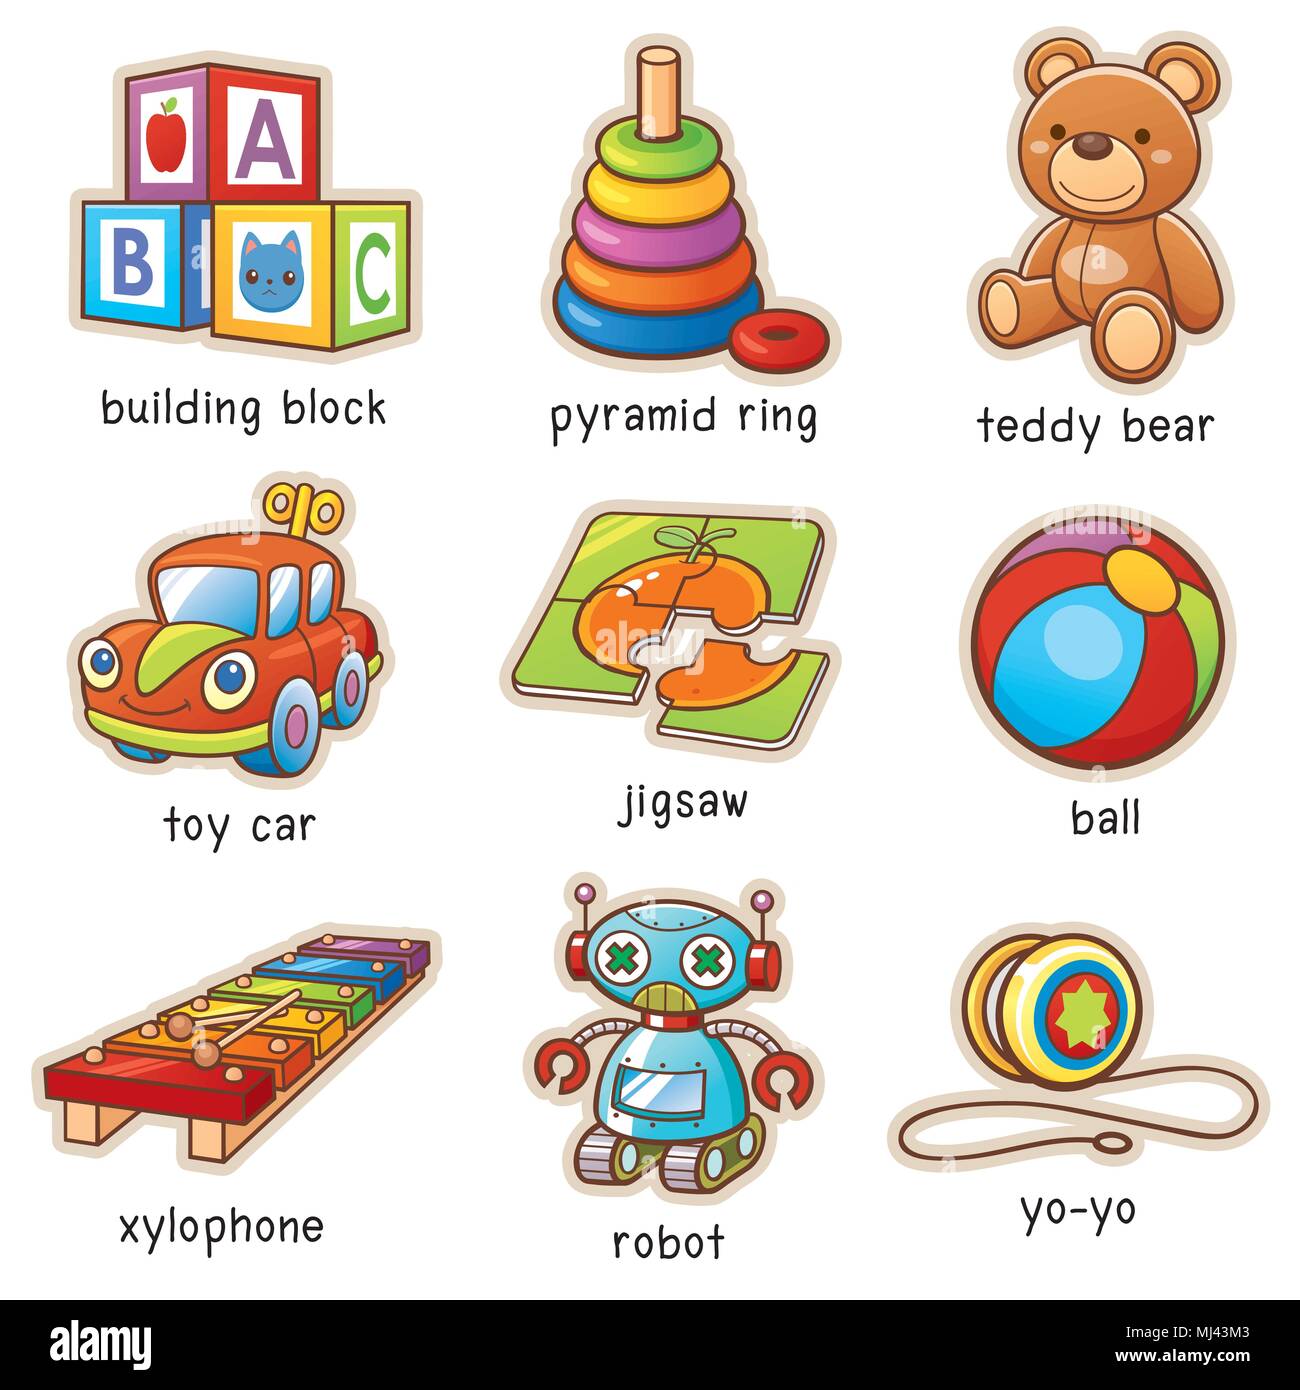 Моя любимая игрушка перевести на английский. Игрушки на английском для детей. Игрушки карточки для детей. Toys английский для детей. Игрушки на английском карточки.